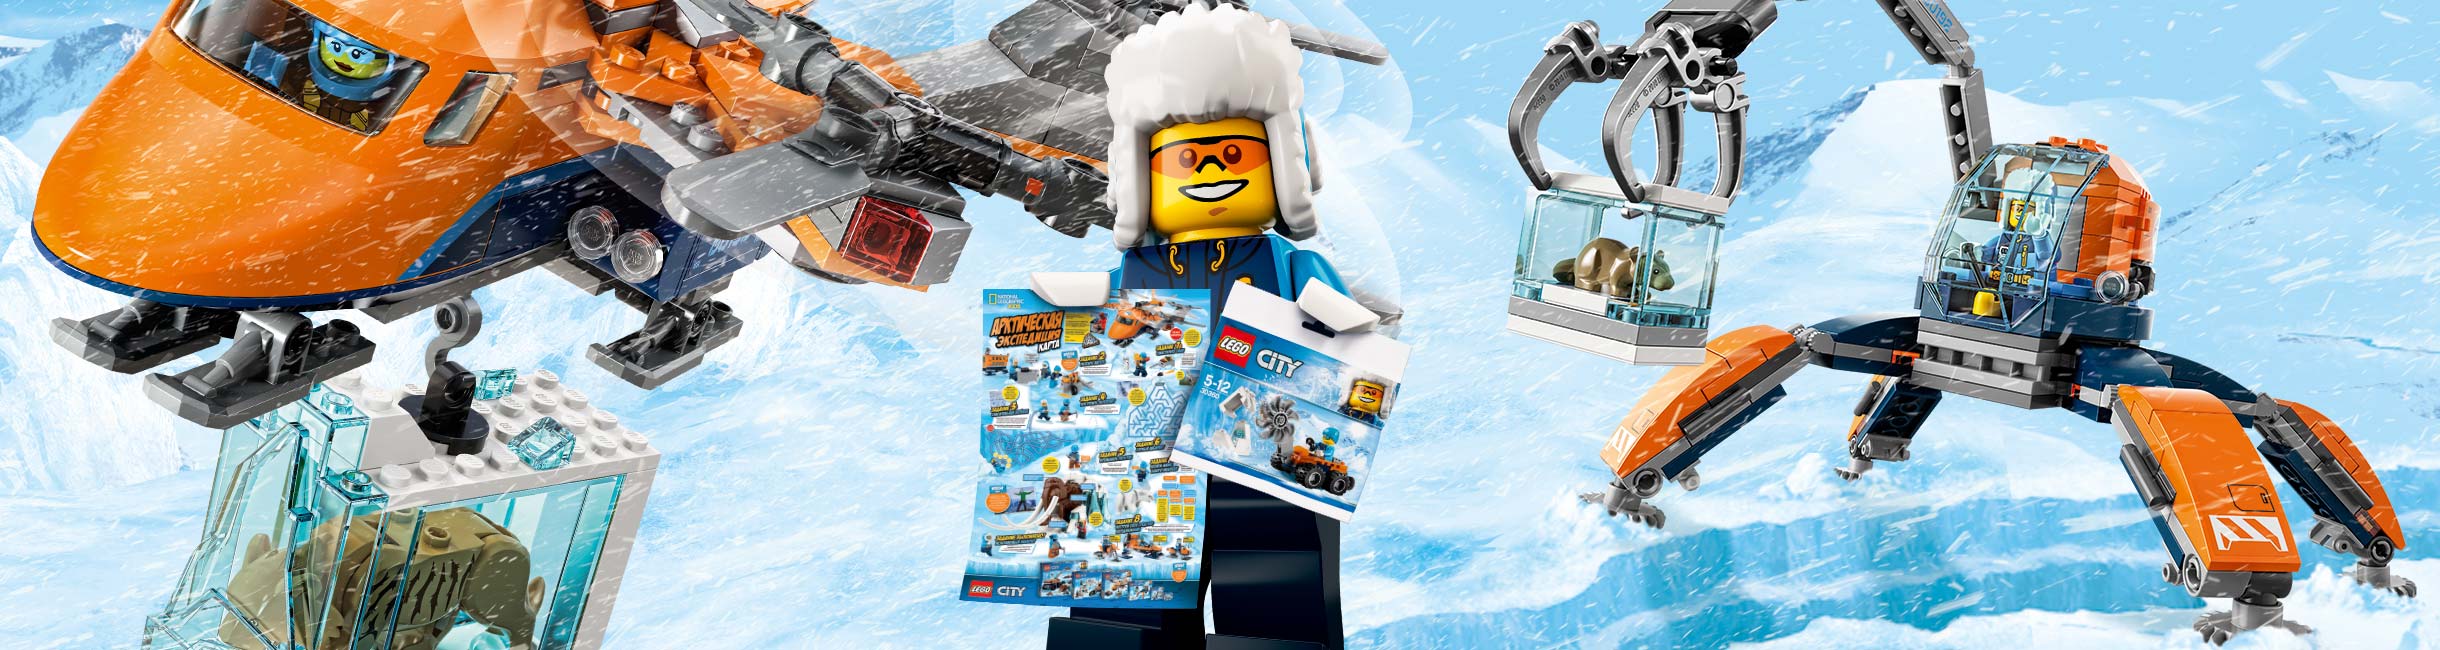 Рекламная акция Лего (LEGO) «В Арктику за подарками!»